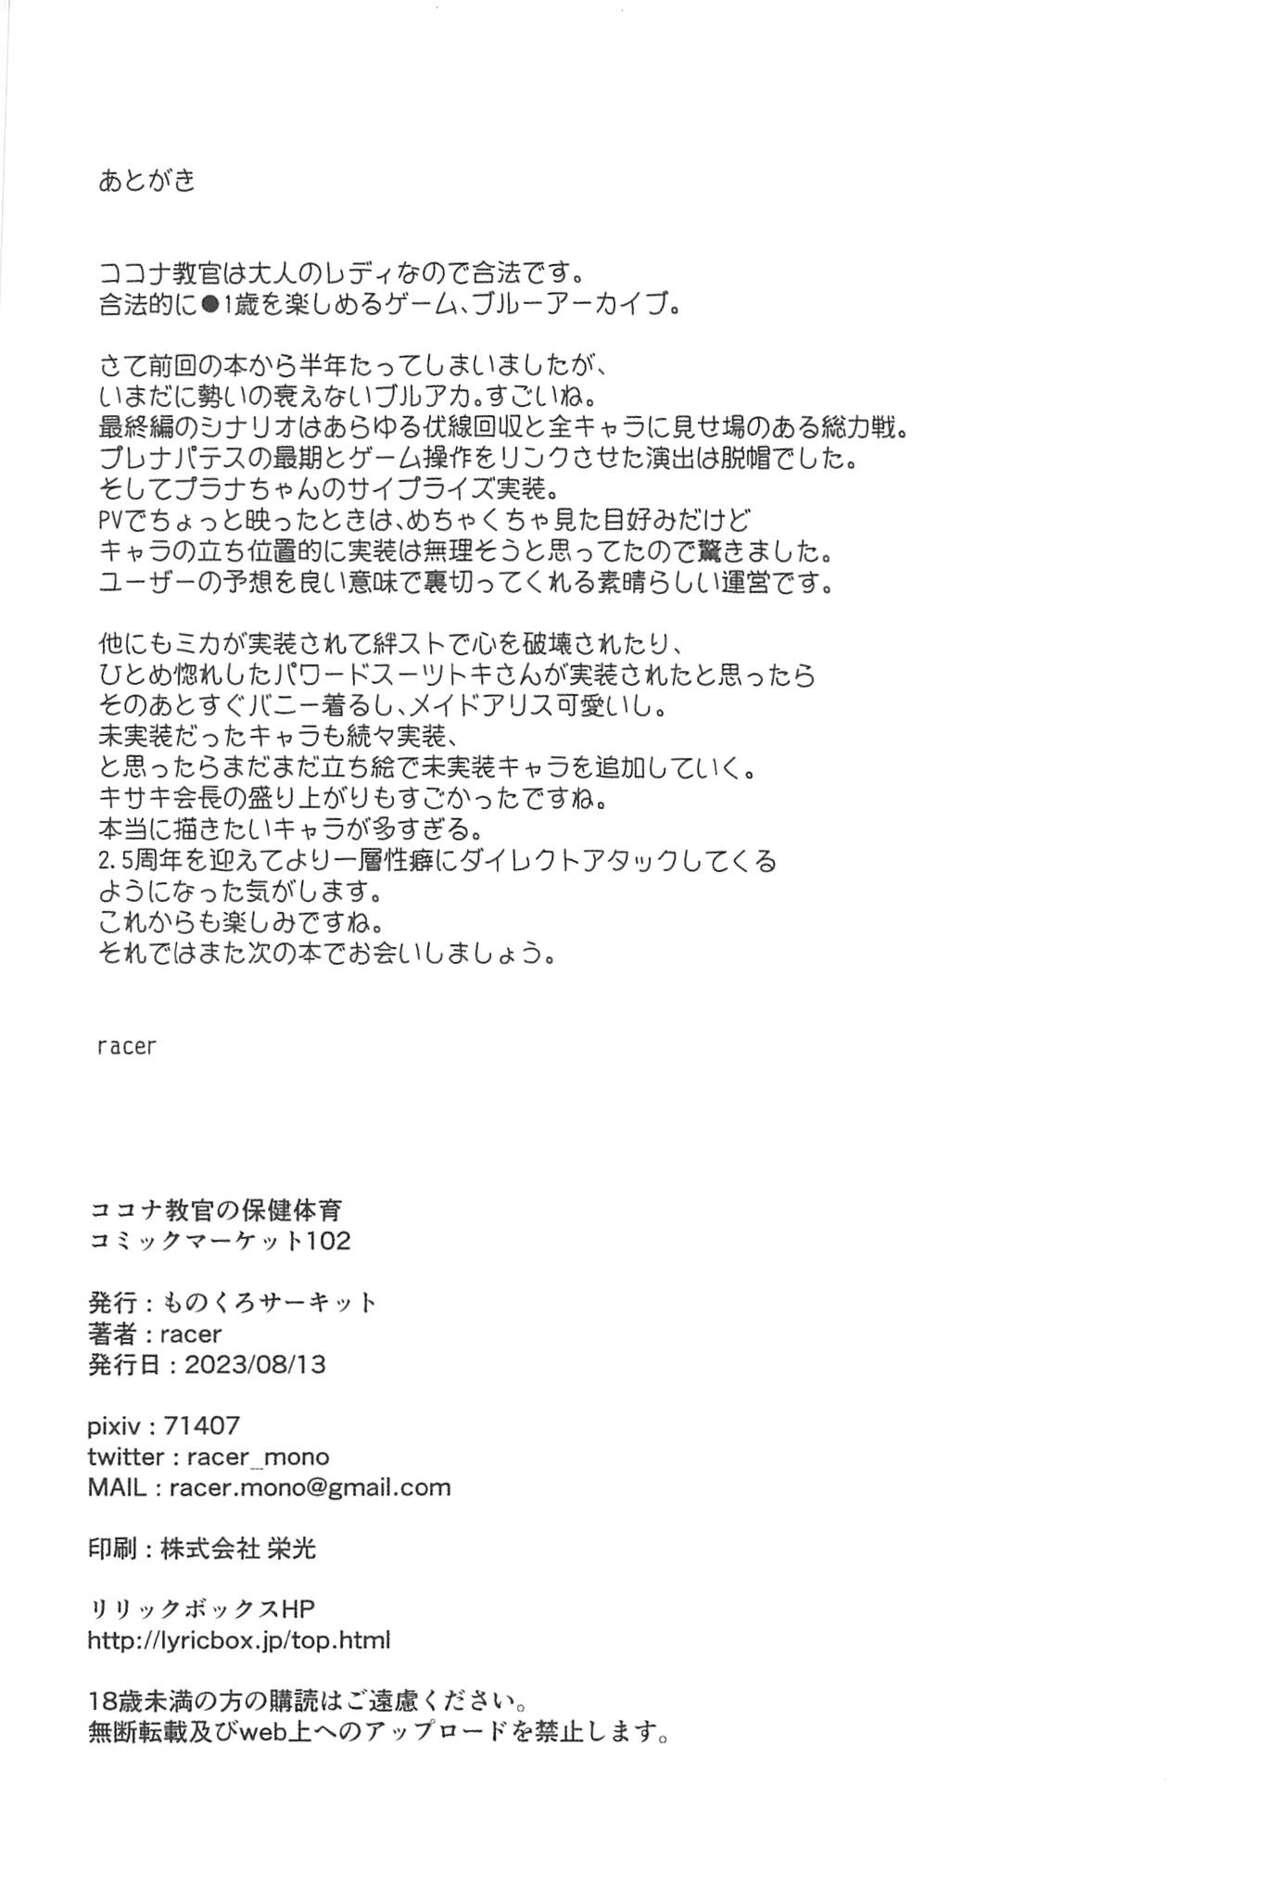 Kokona Kyokan no Hoken Taiiku + C102 Gentai Tokuten Paper 20